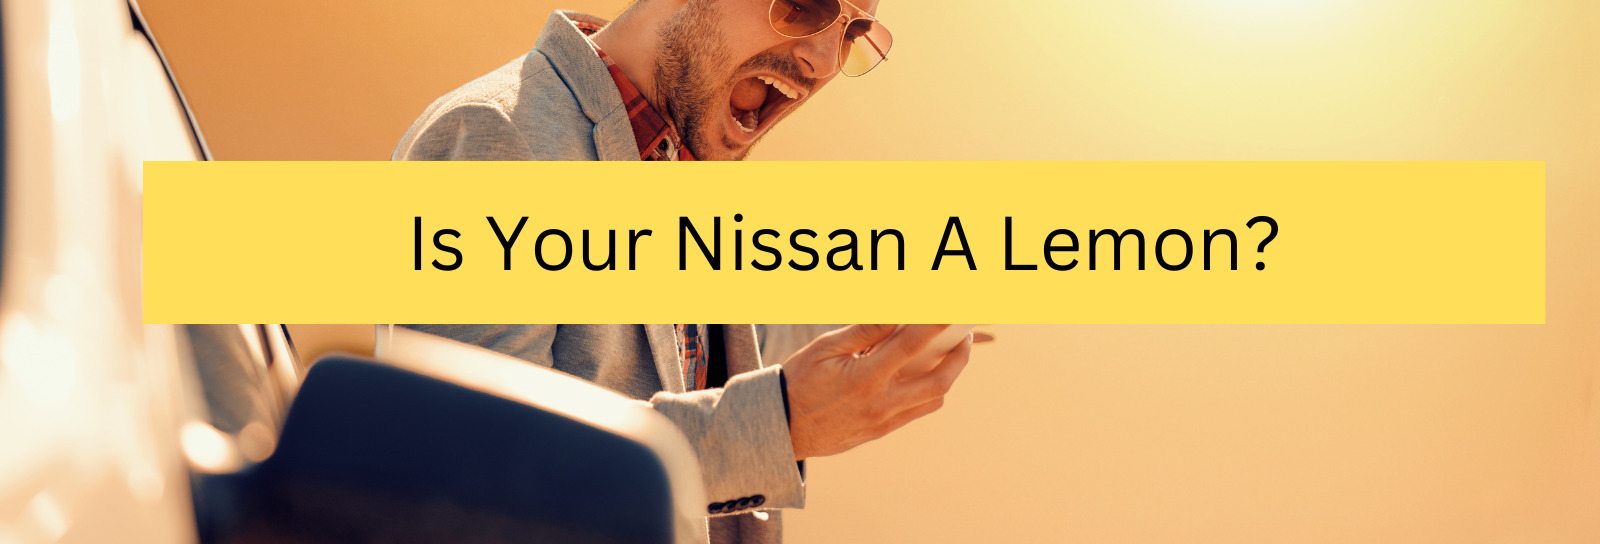 Is Your Nissan A Lemon?